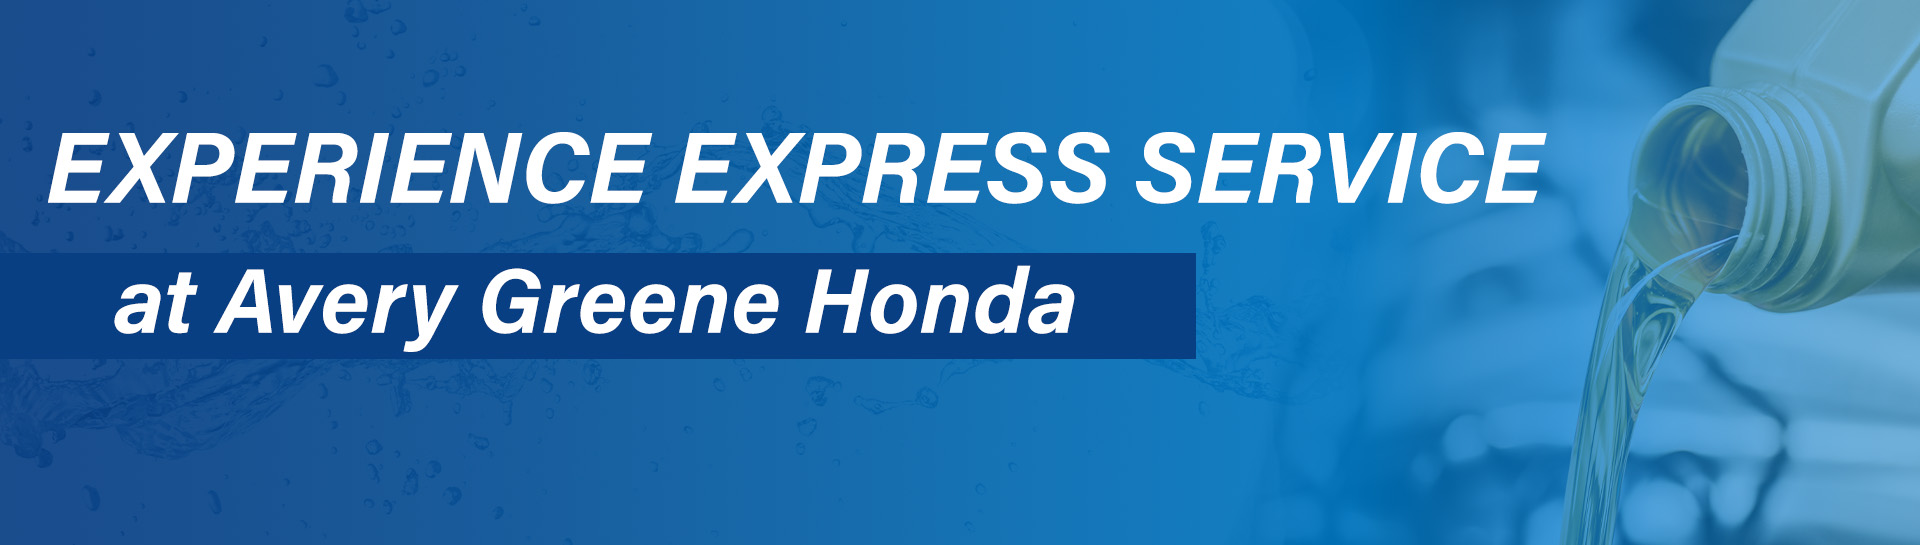 Banner-ExperienceExpressService.jpg